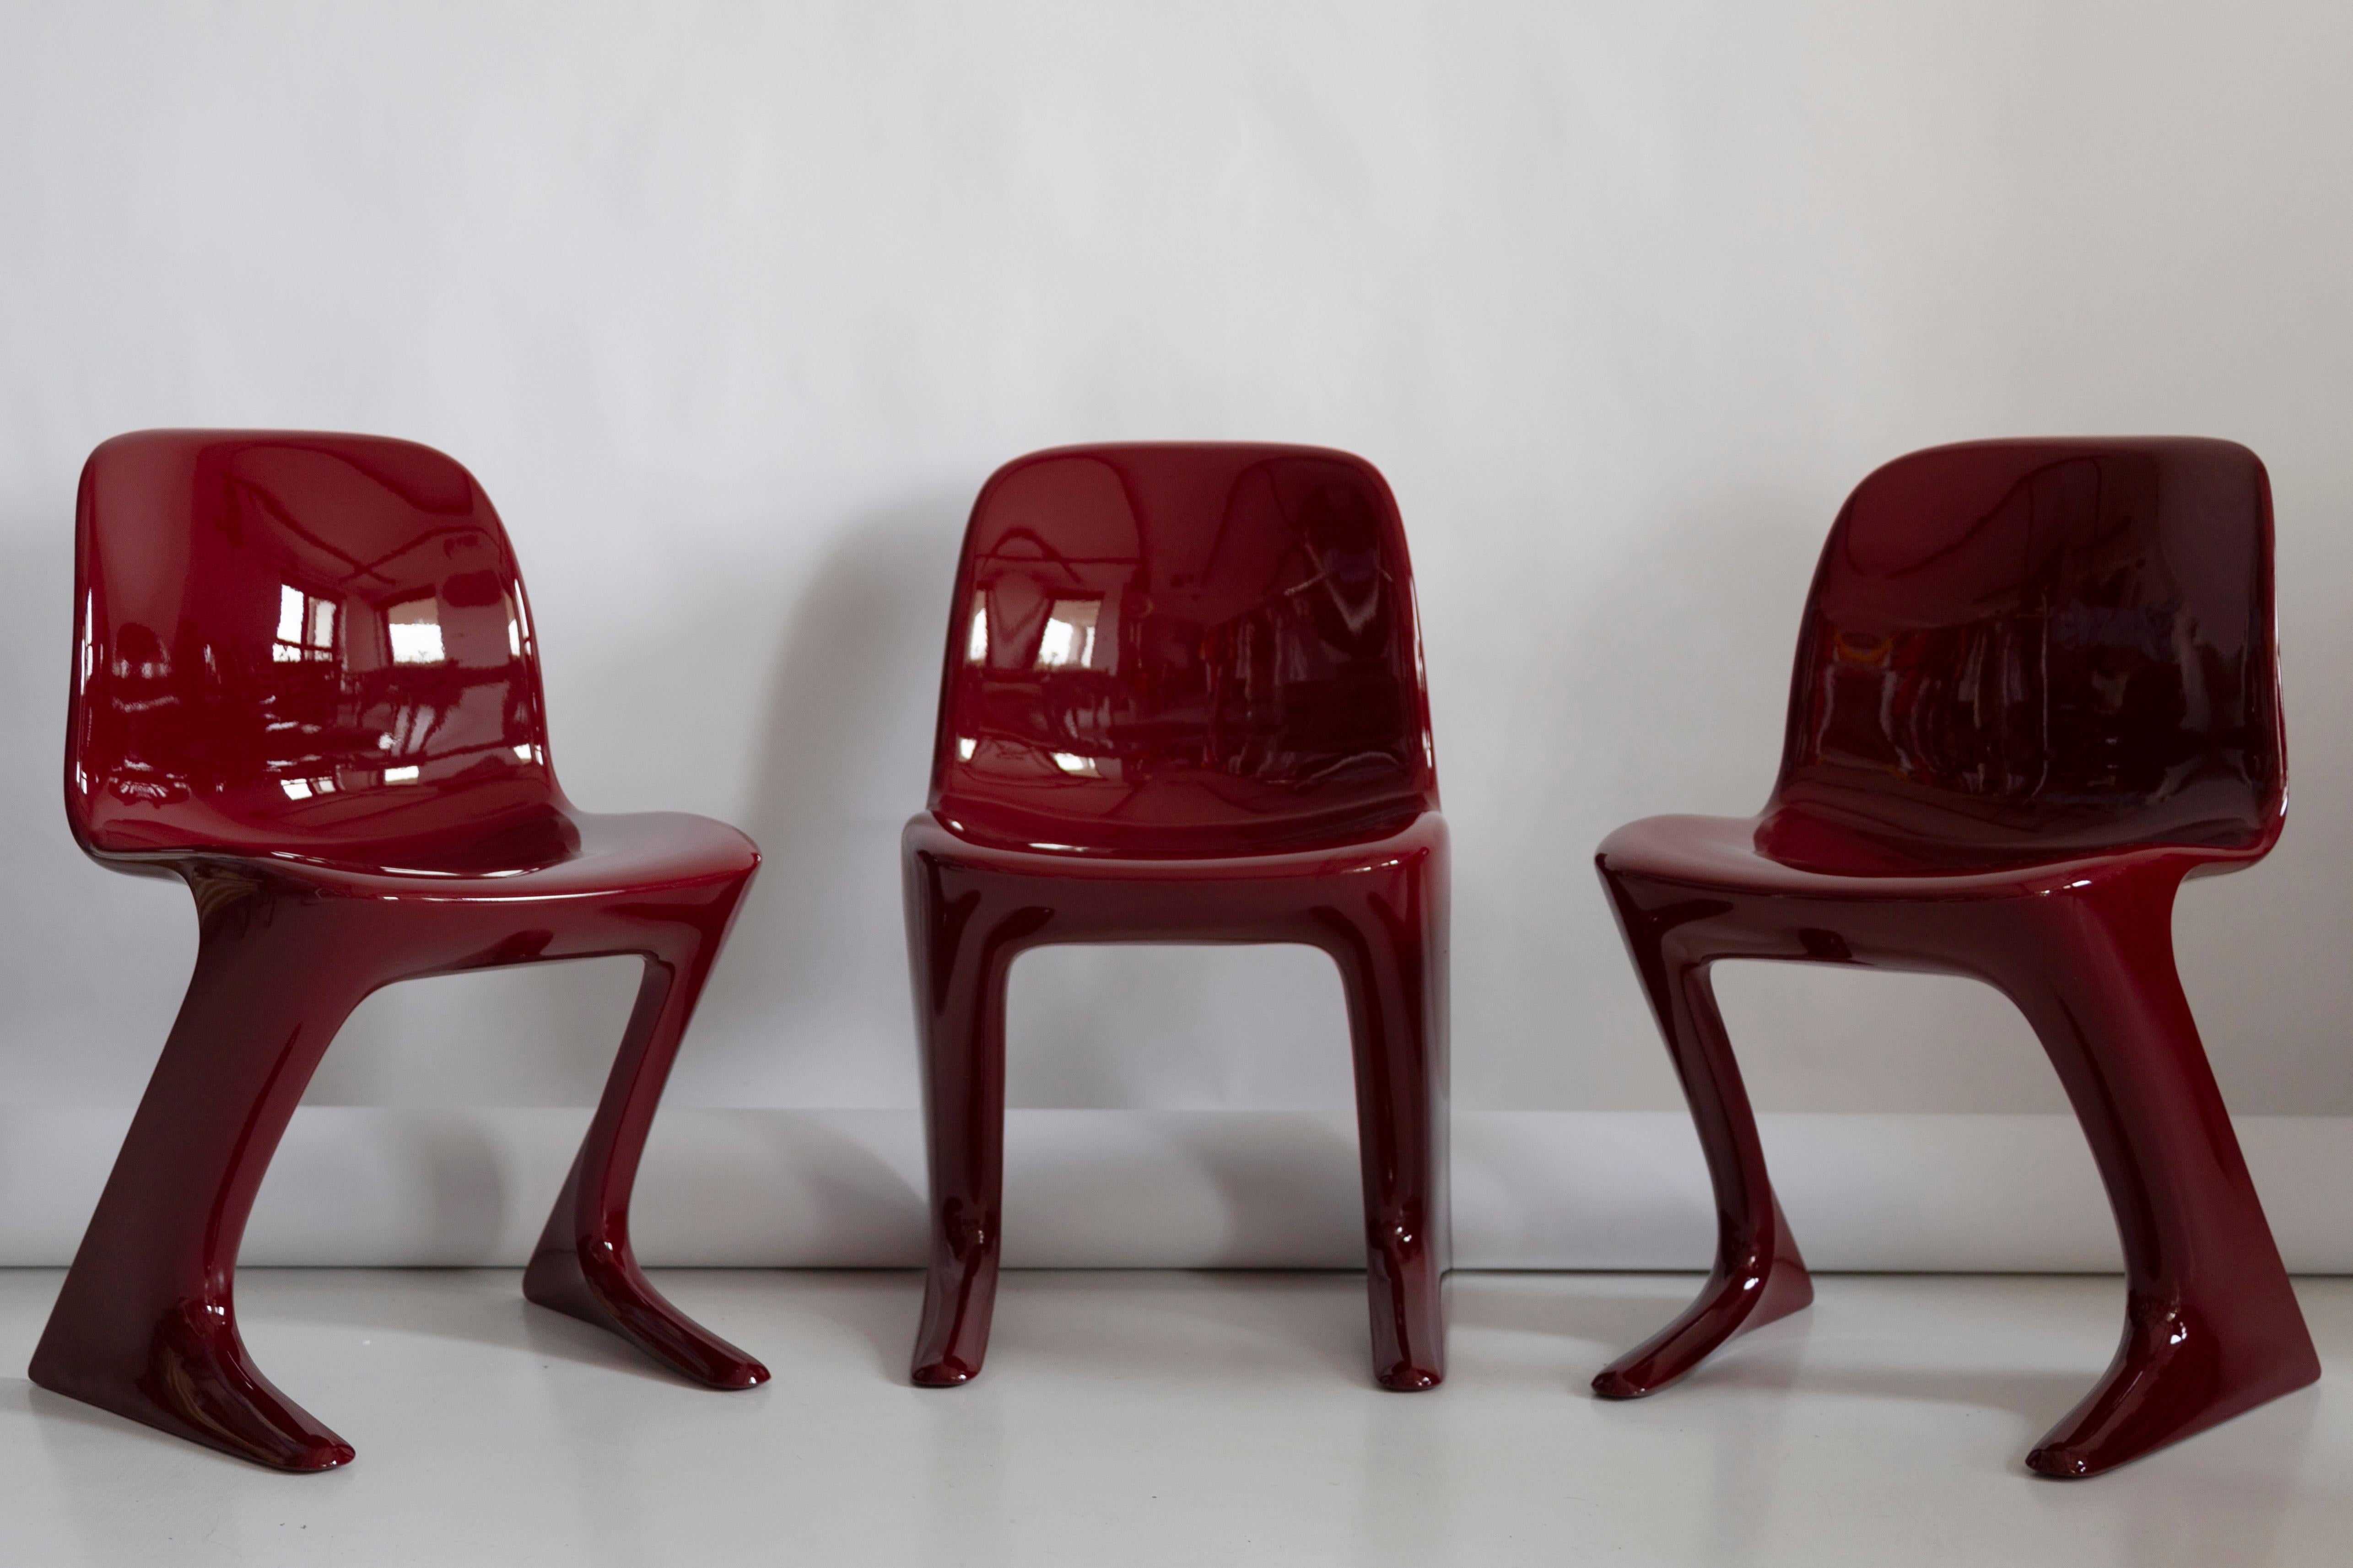 Ce modèle est appelé Calle Z. Conçue en 1968 en RDA par Ernst Moeckl et Siegfried Mehl, version allemande de la chaise Panton. Également appelée chaise kangourou ou chaise variopur. Produit en Allemagne de l'Est.

La chaise a été entièrement rénovée